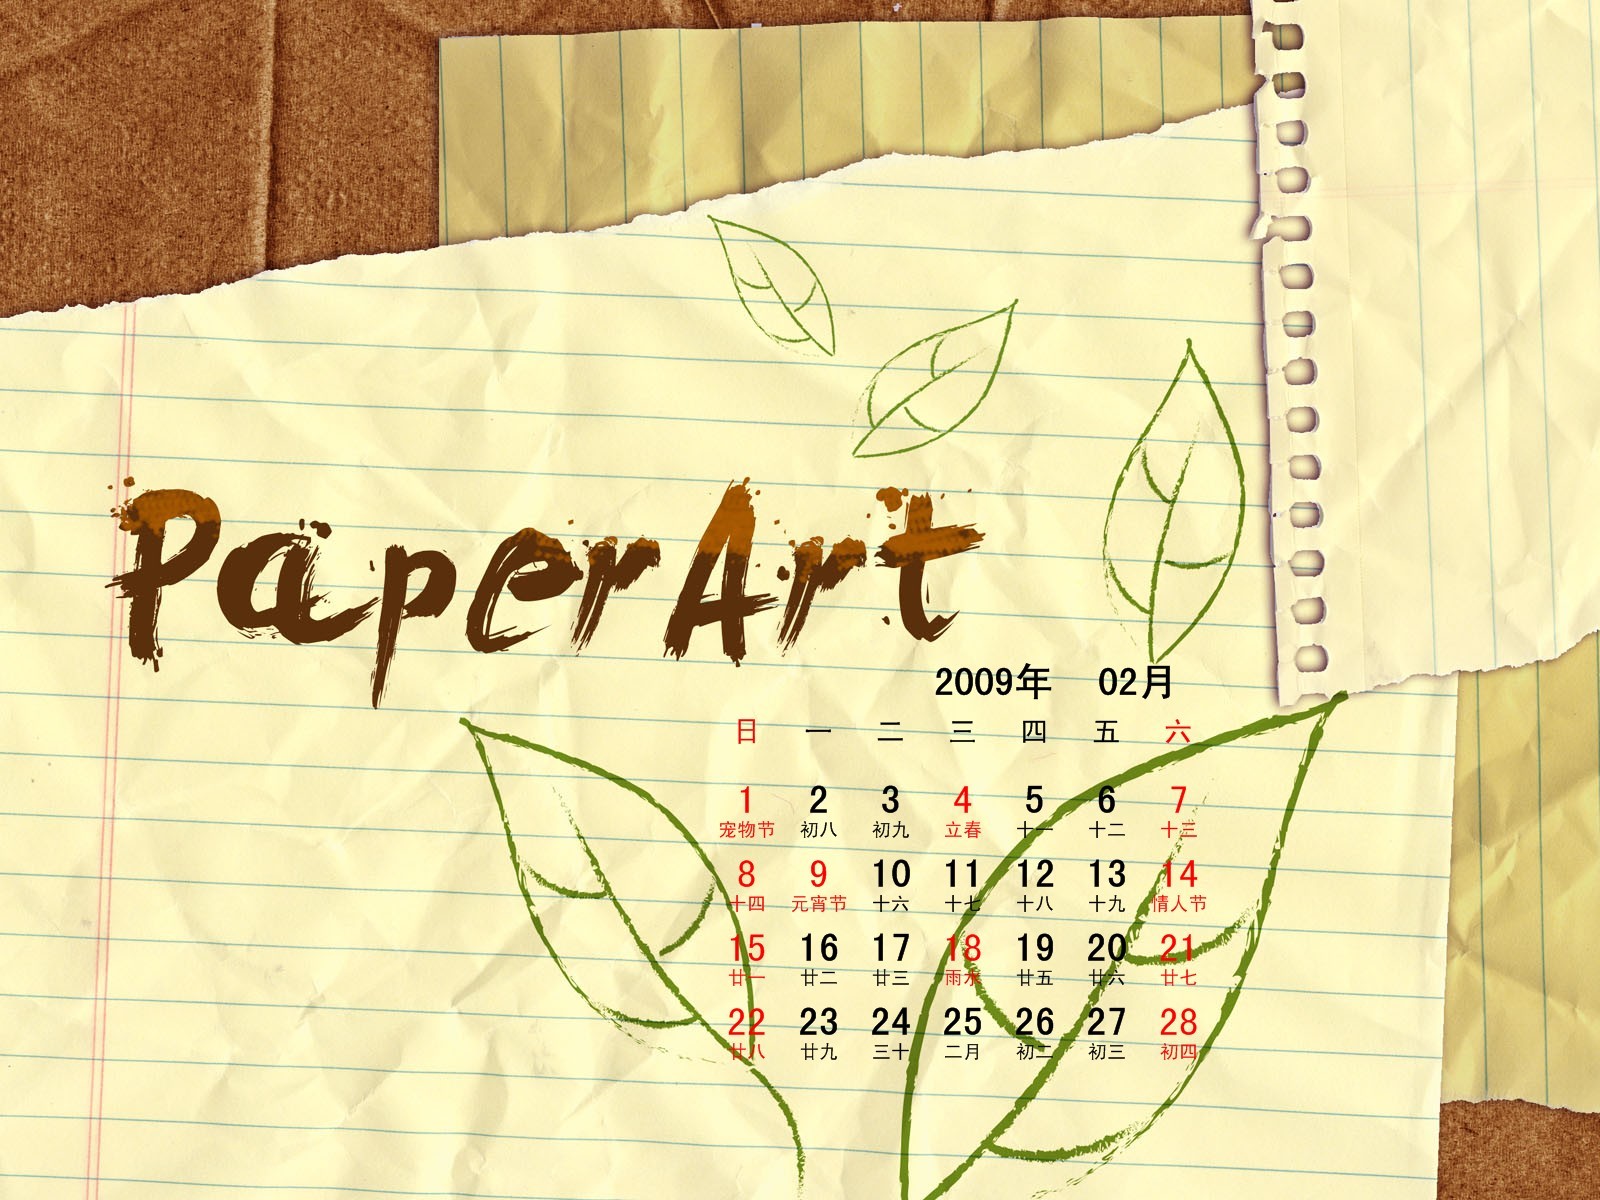 PaperArt 09 años en el fondo de pantalla de calendario febrero #27 - 1600x1200